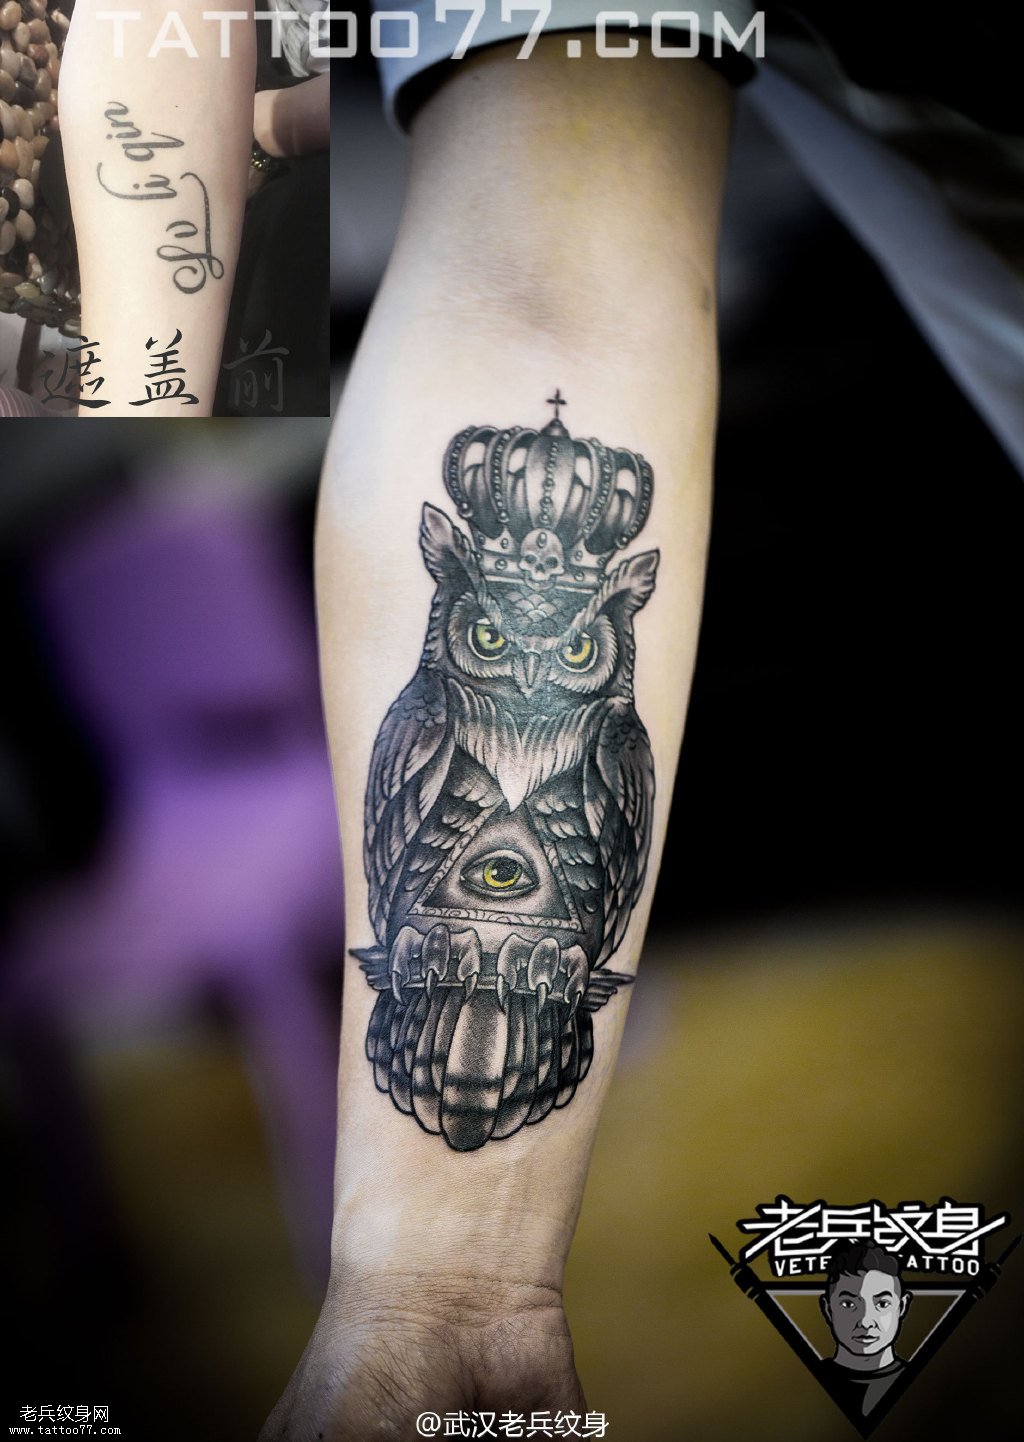 手部猫头鹰纹身图案作品遮盖旧纹身